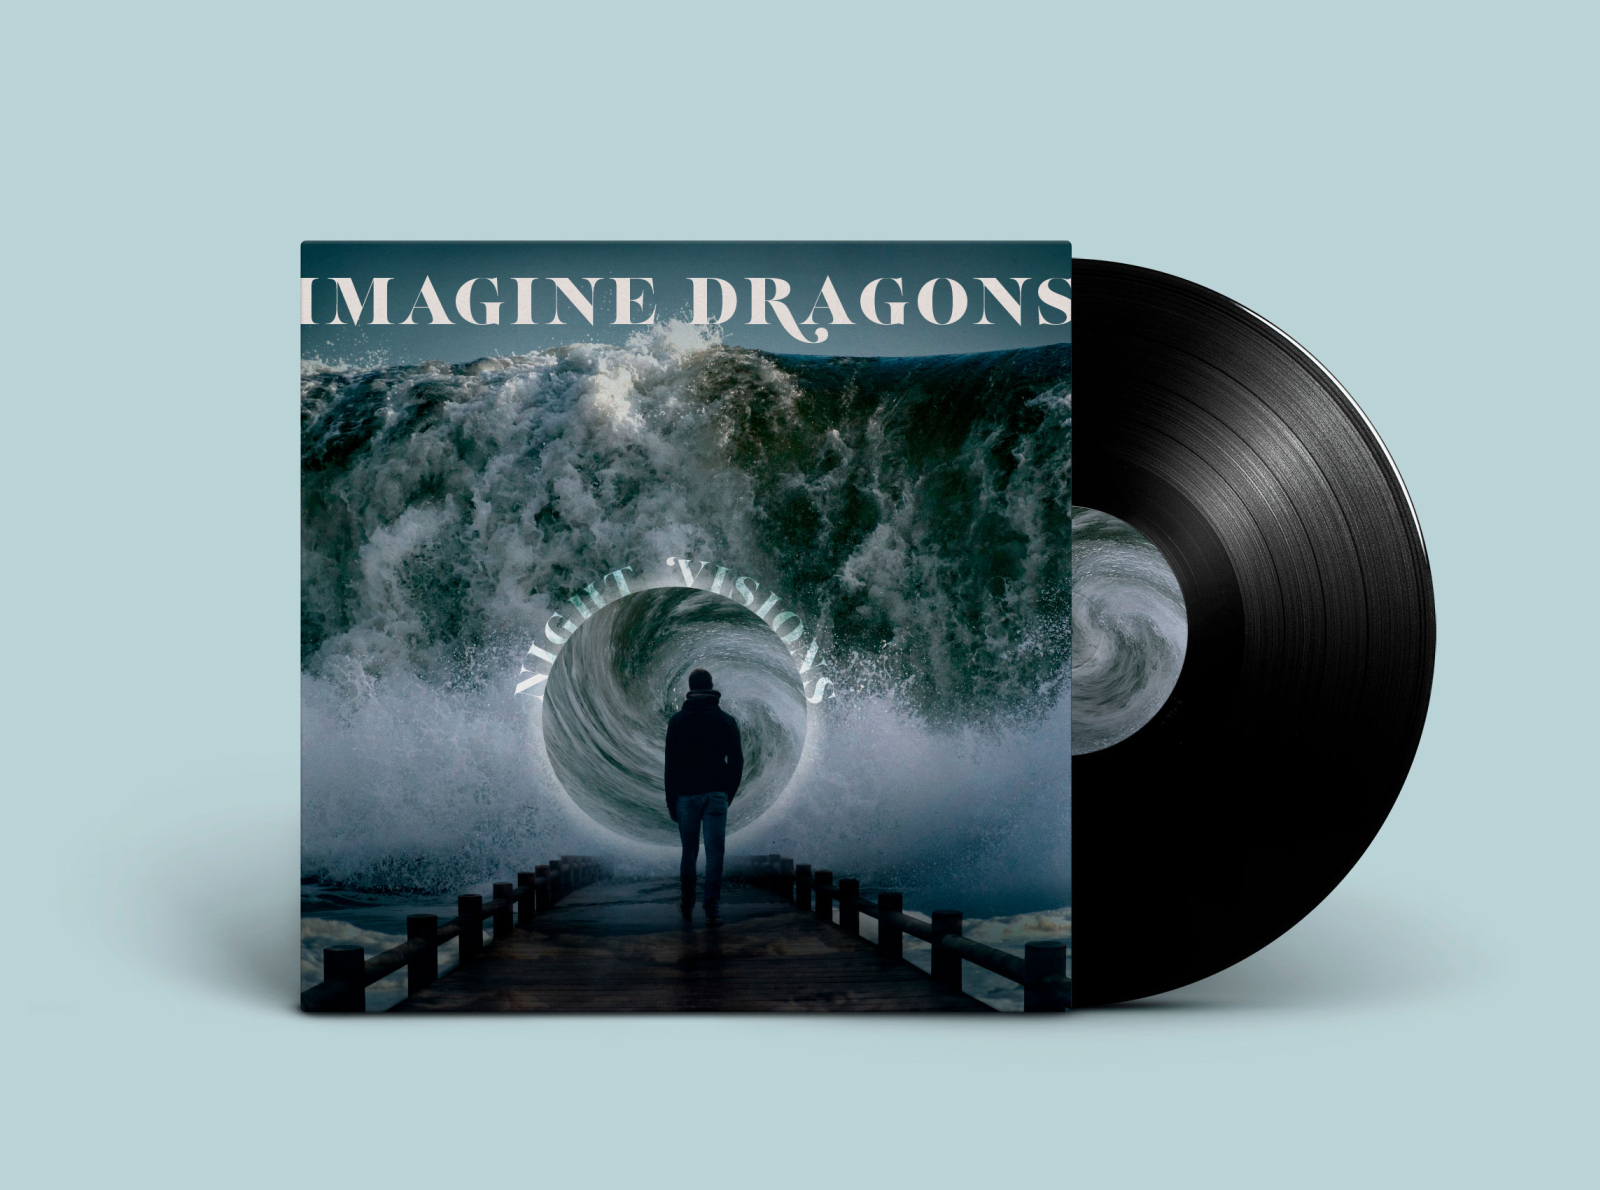 imagine dragons album 2014